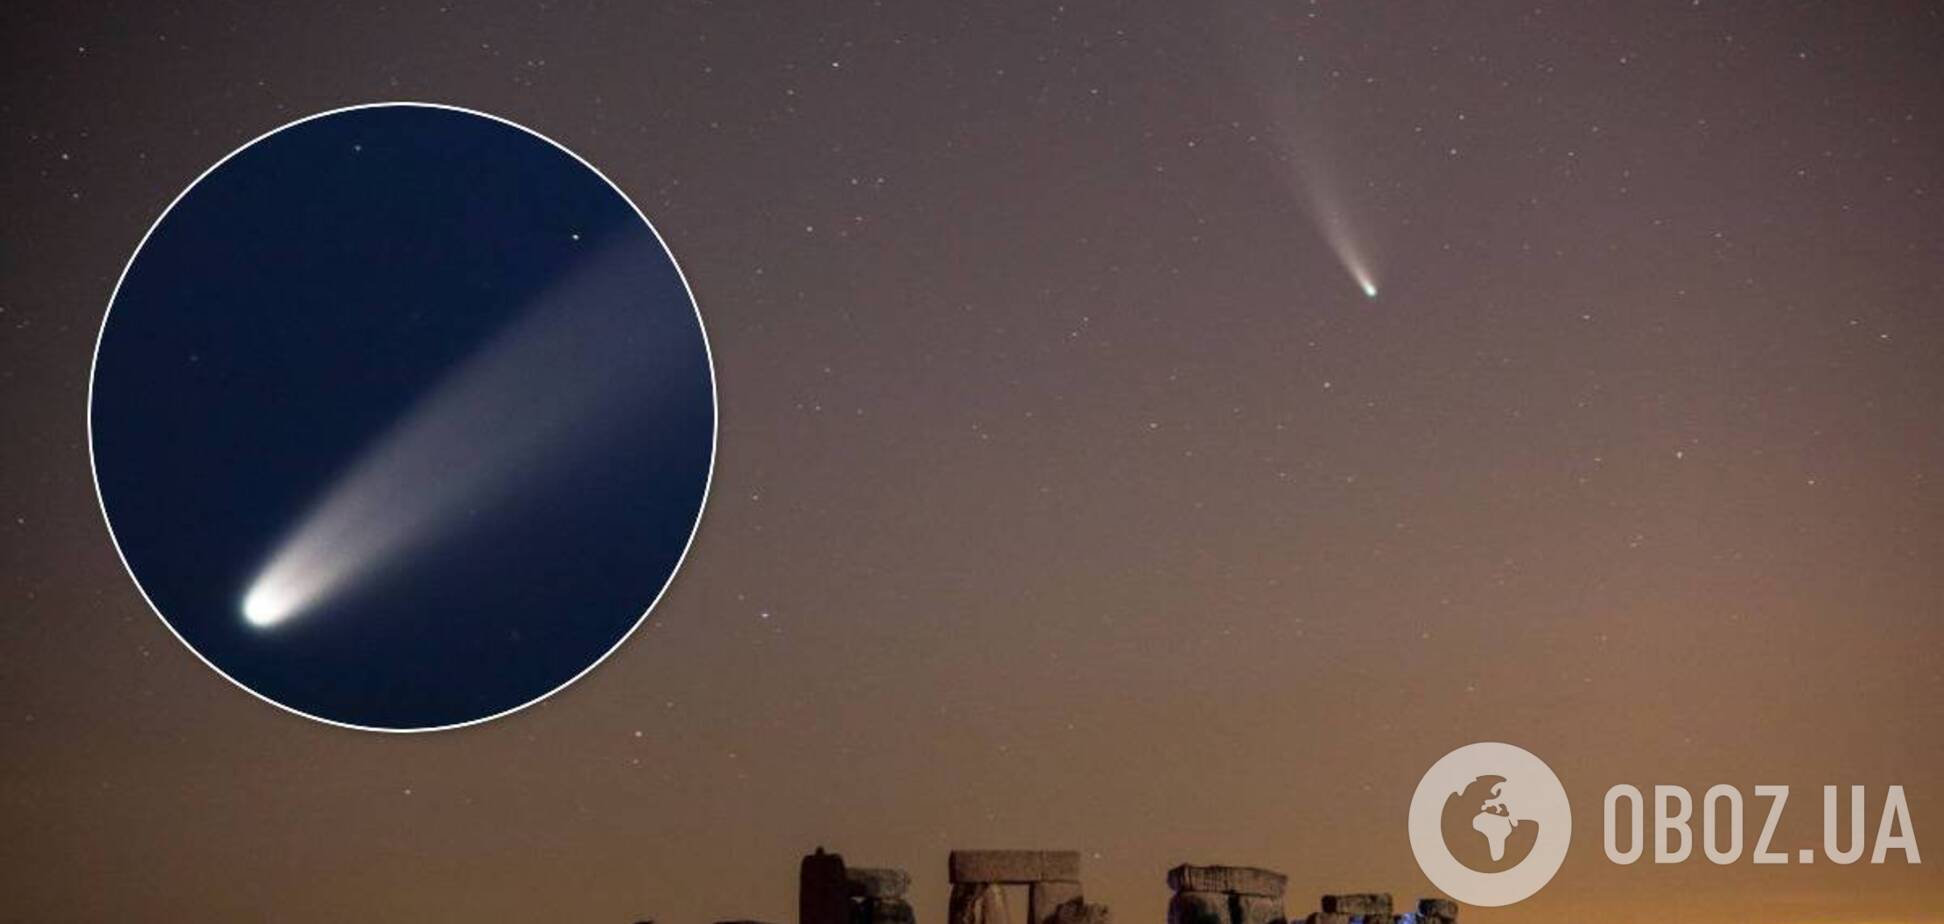 Комета Neowise пройдет на минимальном расстоянии от Земли